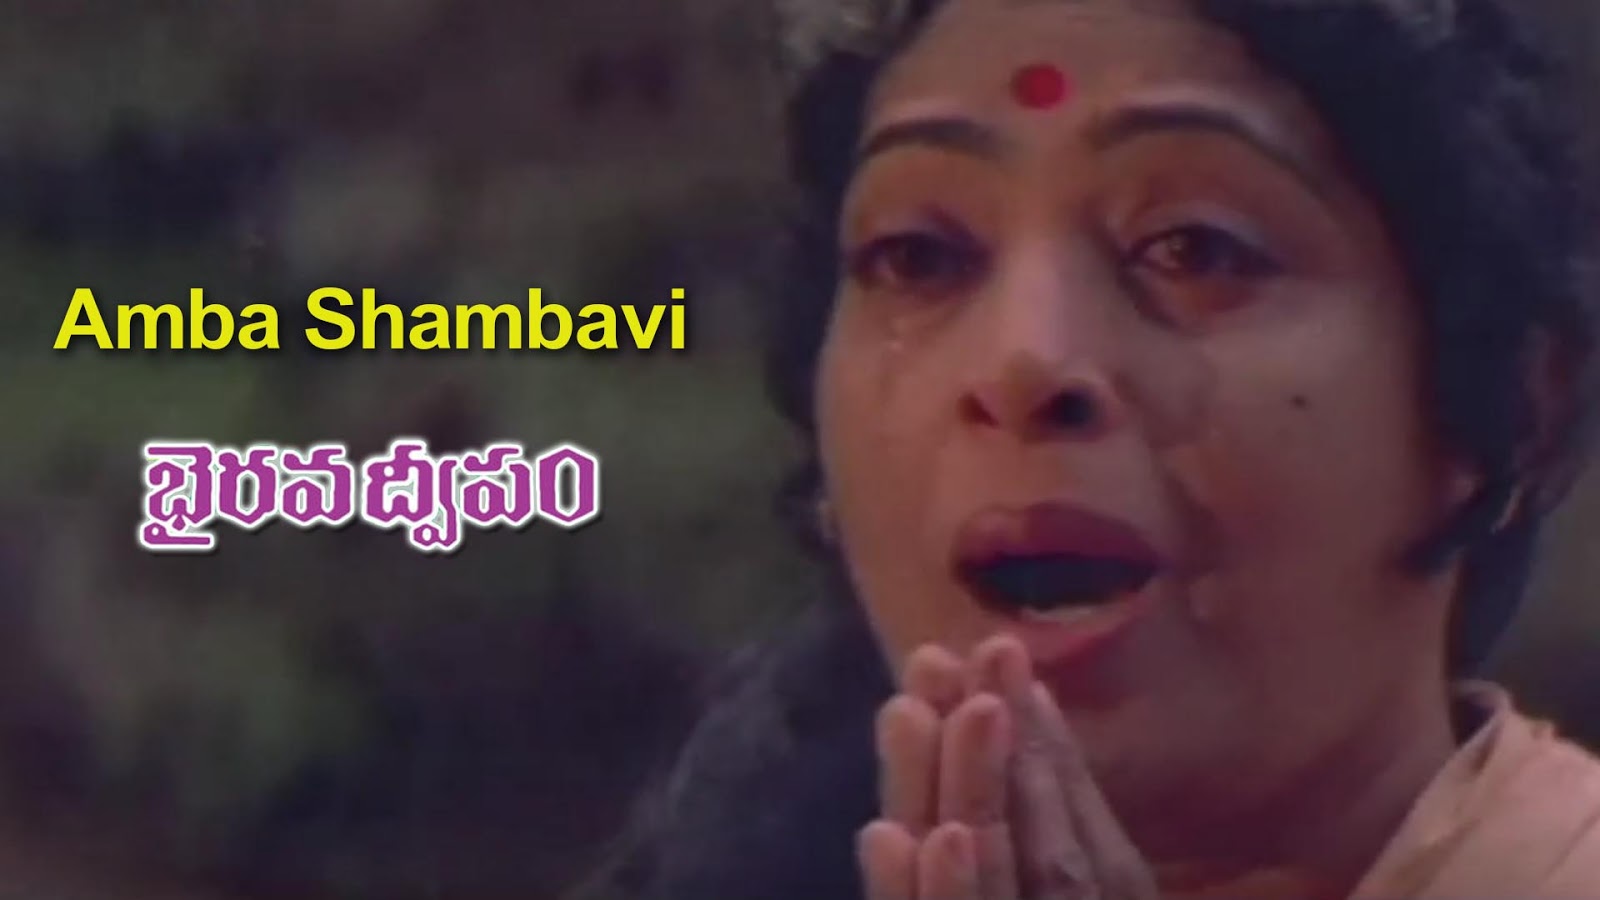 Ambaa Shambavi Telugu Song Lyrics - Bhairava Dweepam (1994) - AtoZ Lyrics -  Telugu Songs Lyrics | A to Z Telugu Songs Lyrics in English | Old Telugu  Songs Lyrics